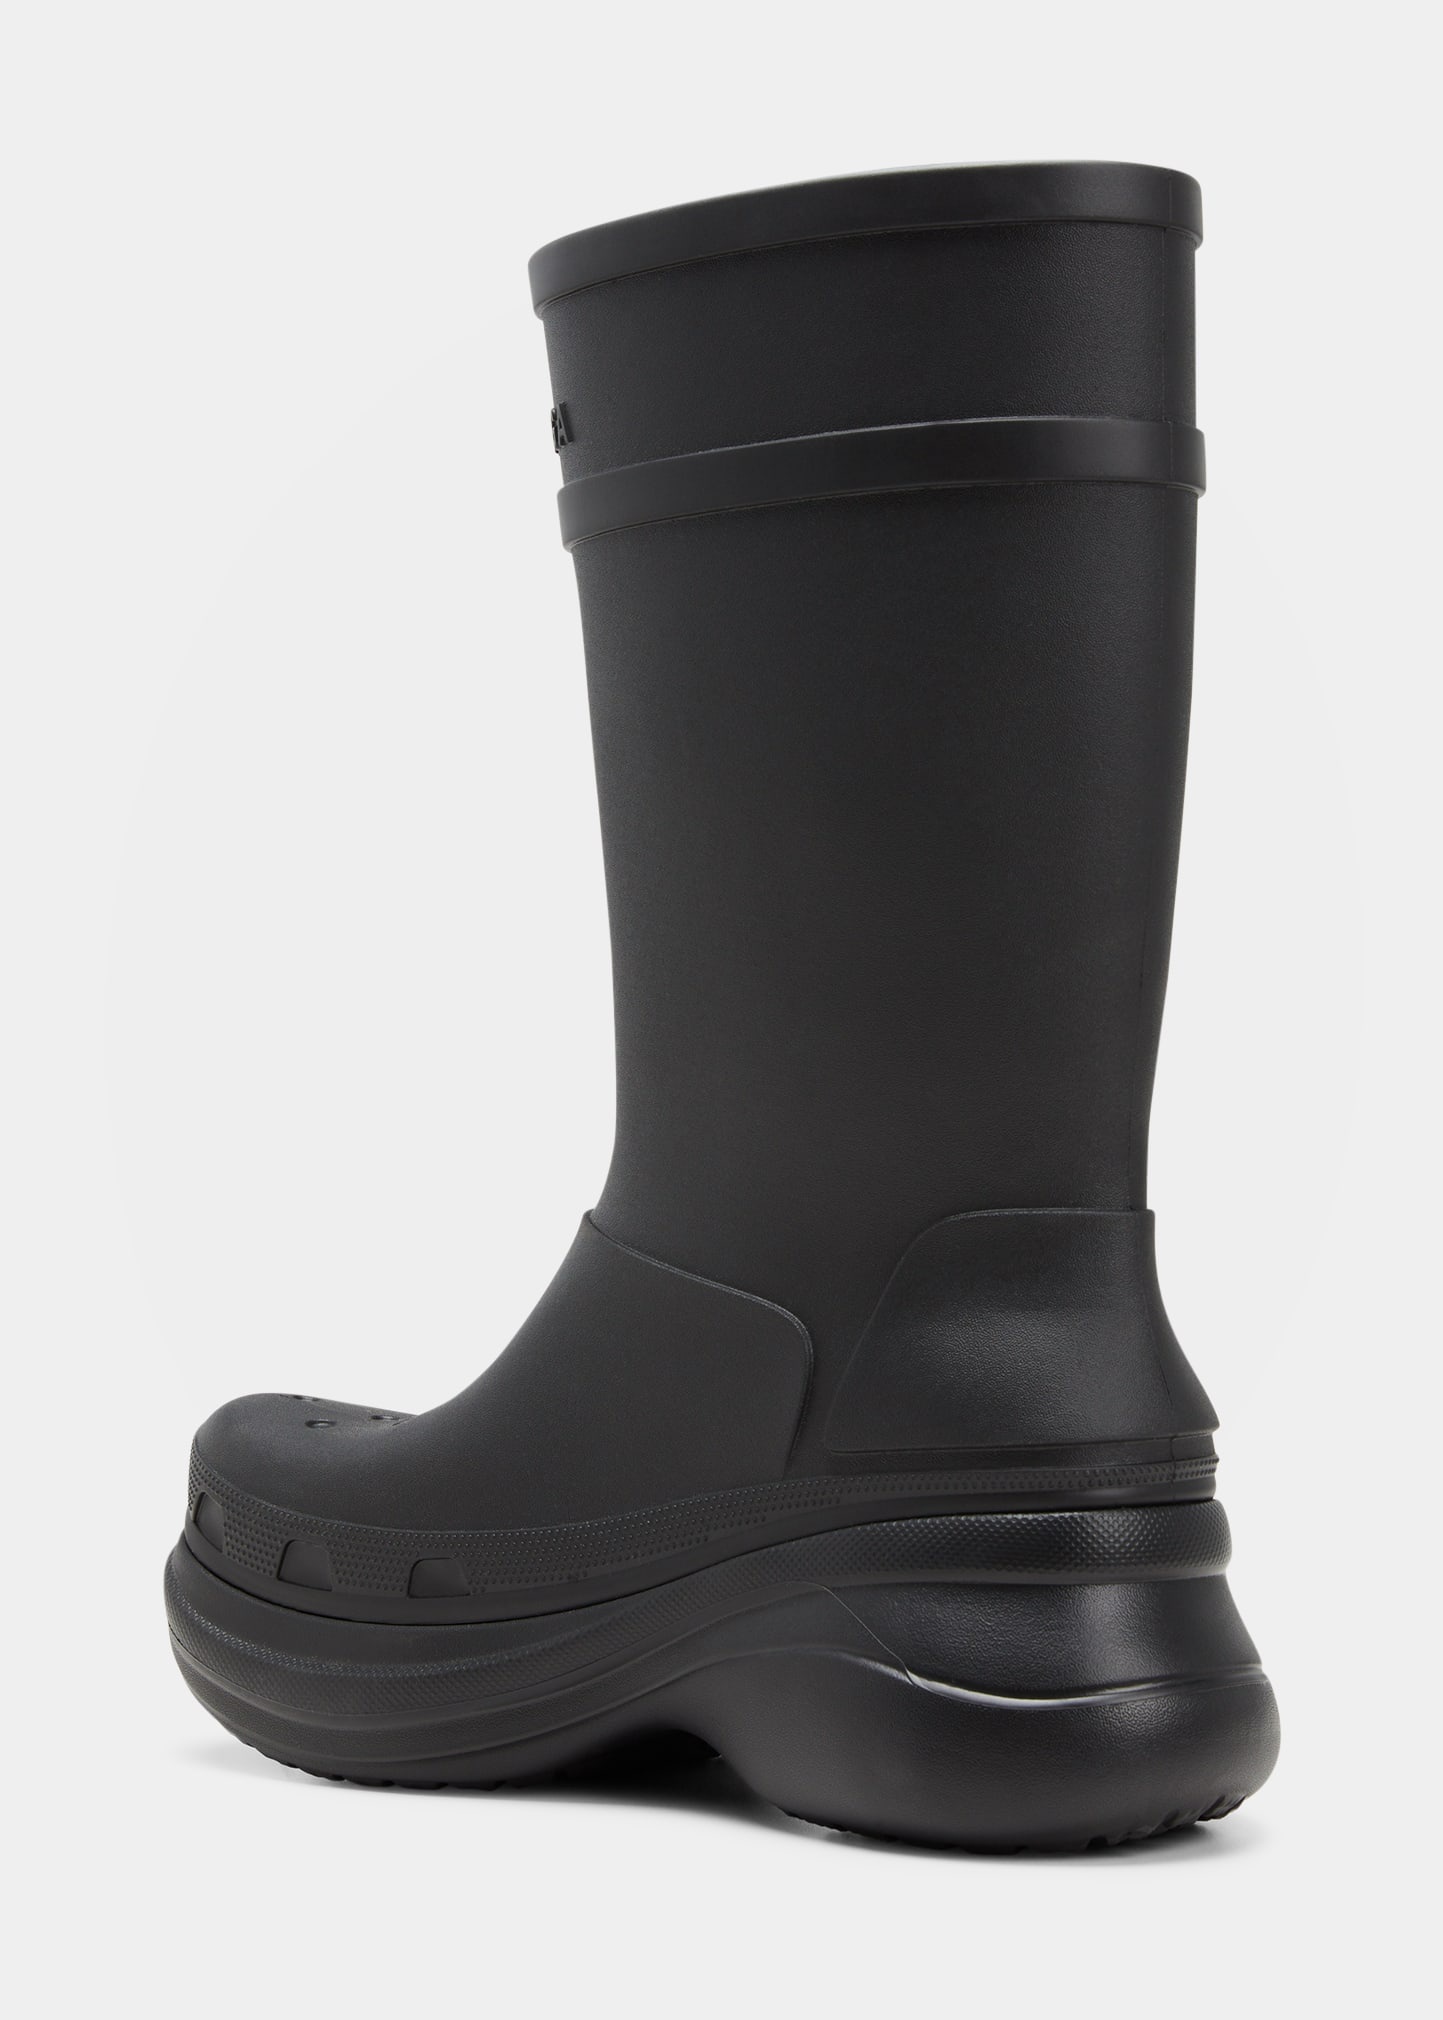 x Crocs™ Men's Tonal Rubber Rain Boots - 4